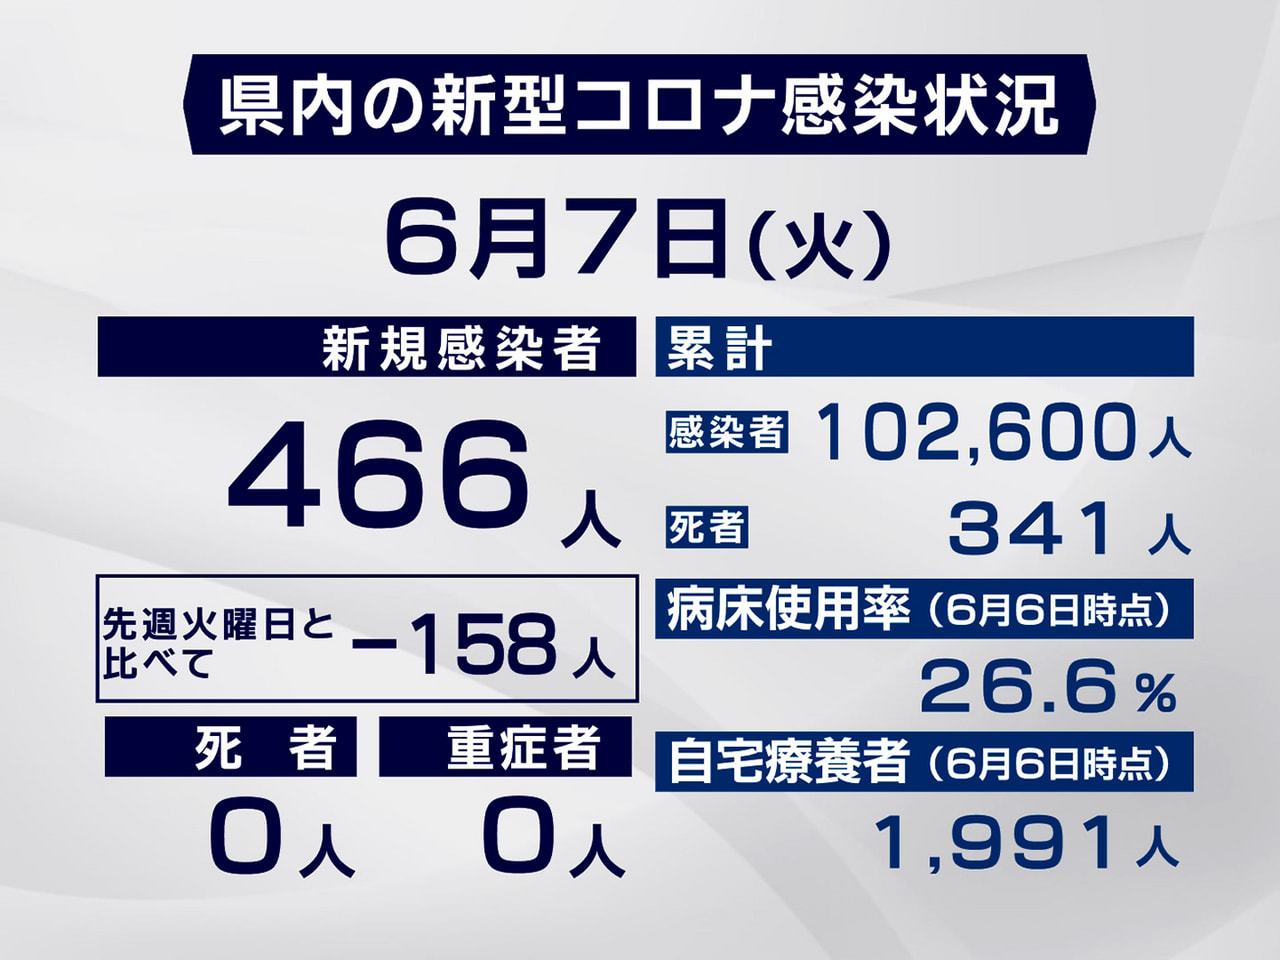 岐阜県は７日、新型コロナウイルスの新規感染者が４６６人確認されたと発表しました。...